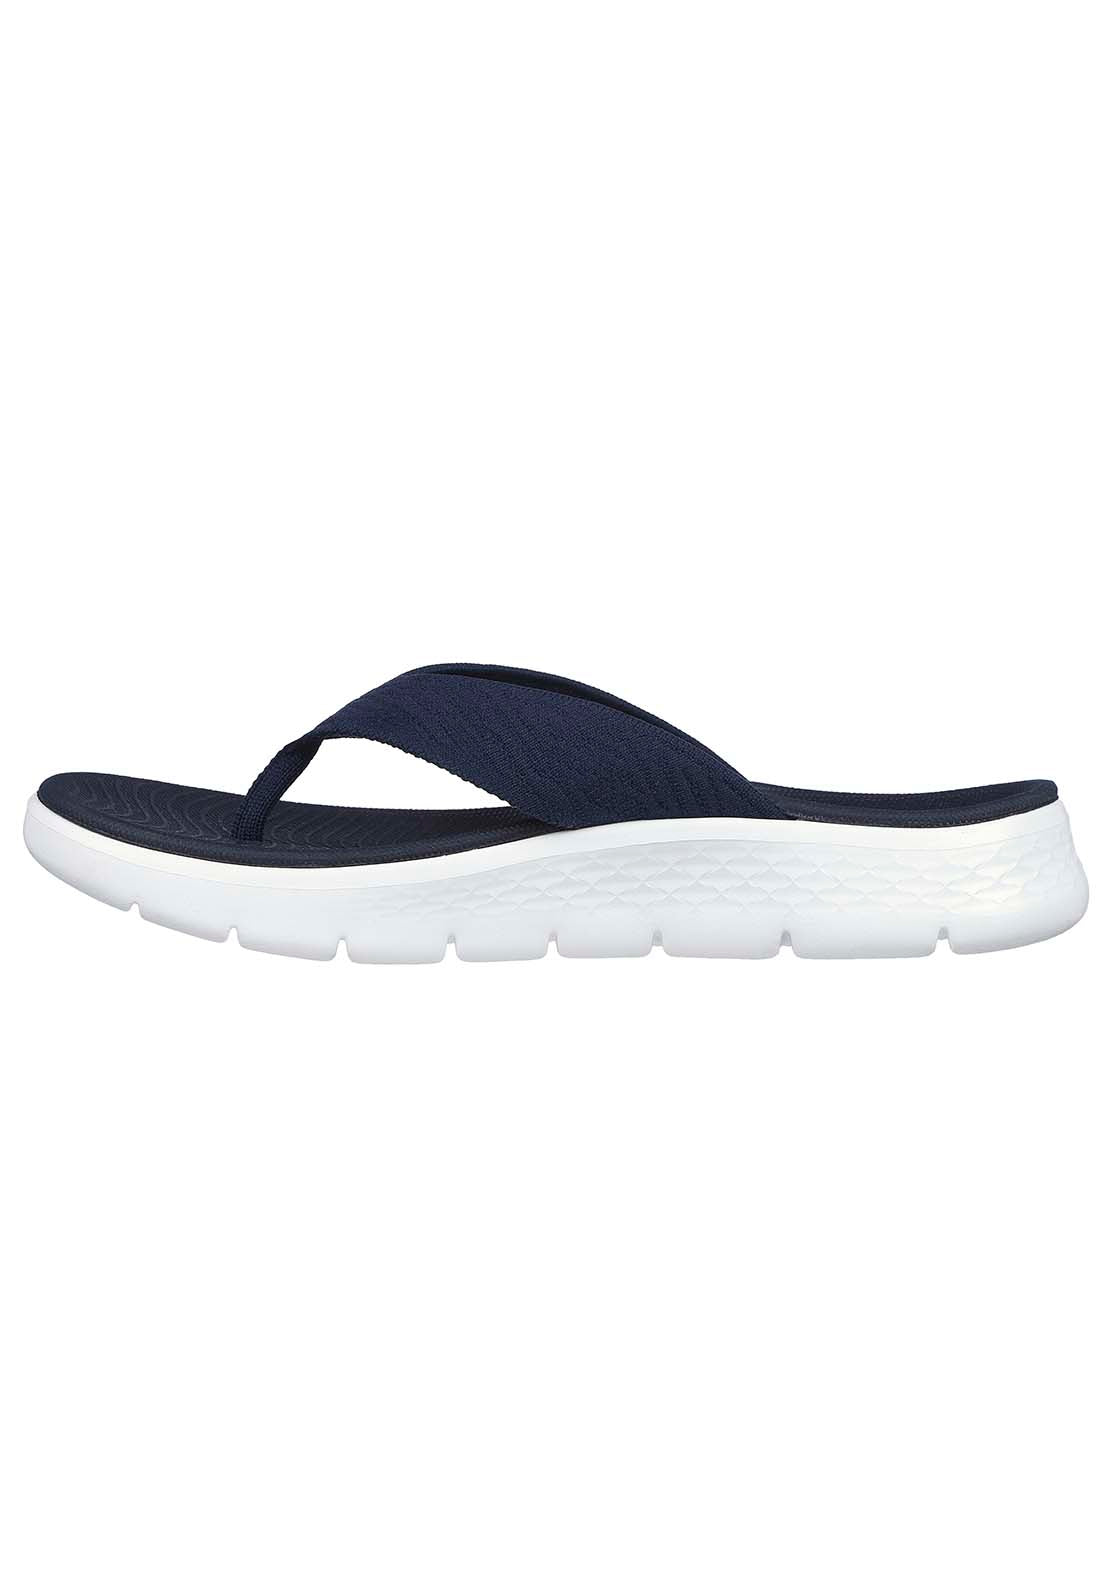 Skechers Go Walk Flex Sandal - Splendor - Navy 4 Shaws Department Stores